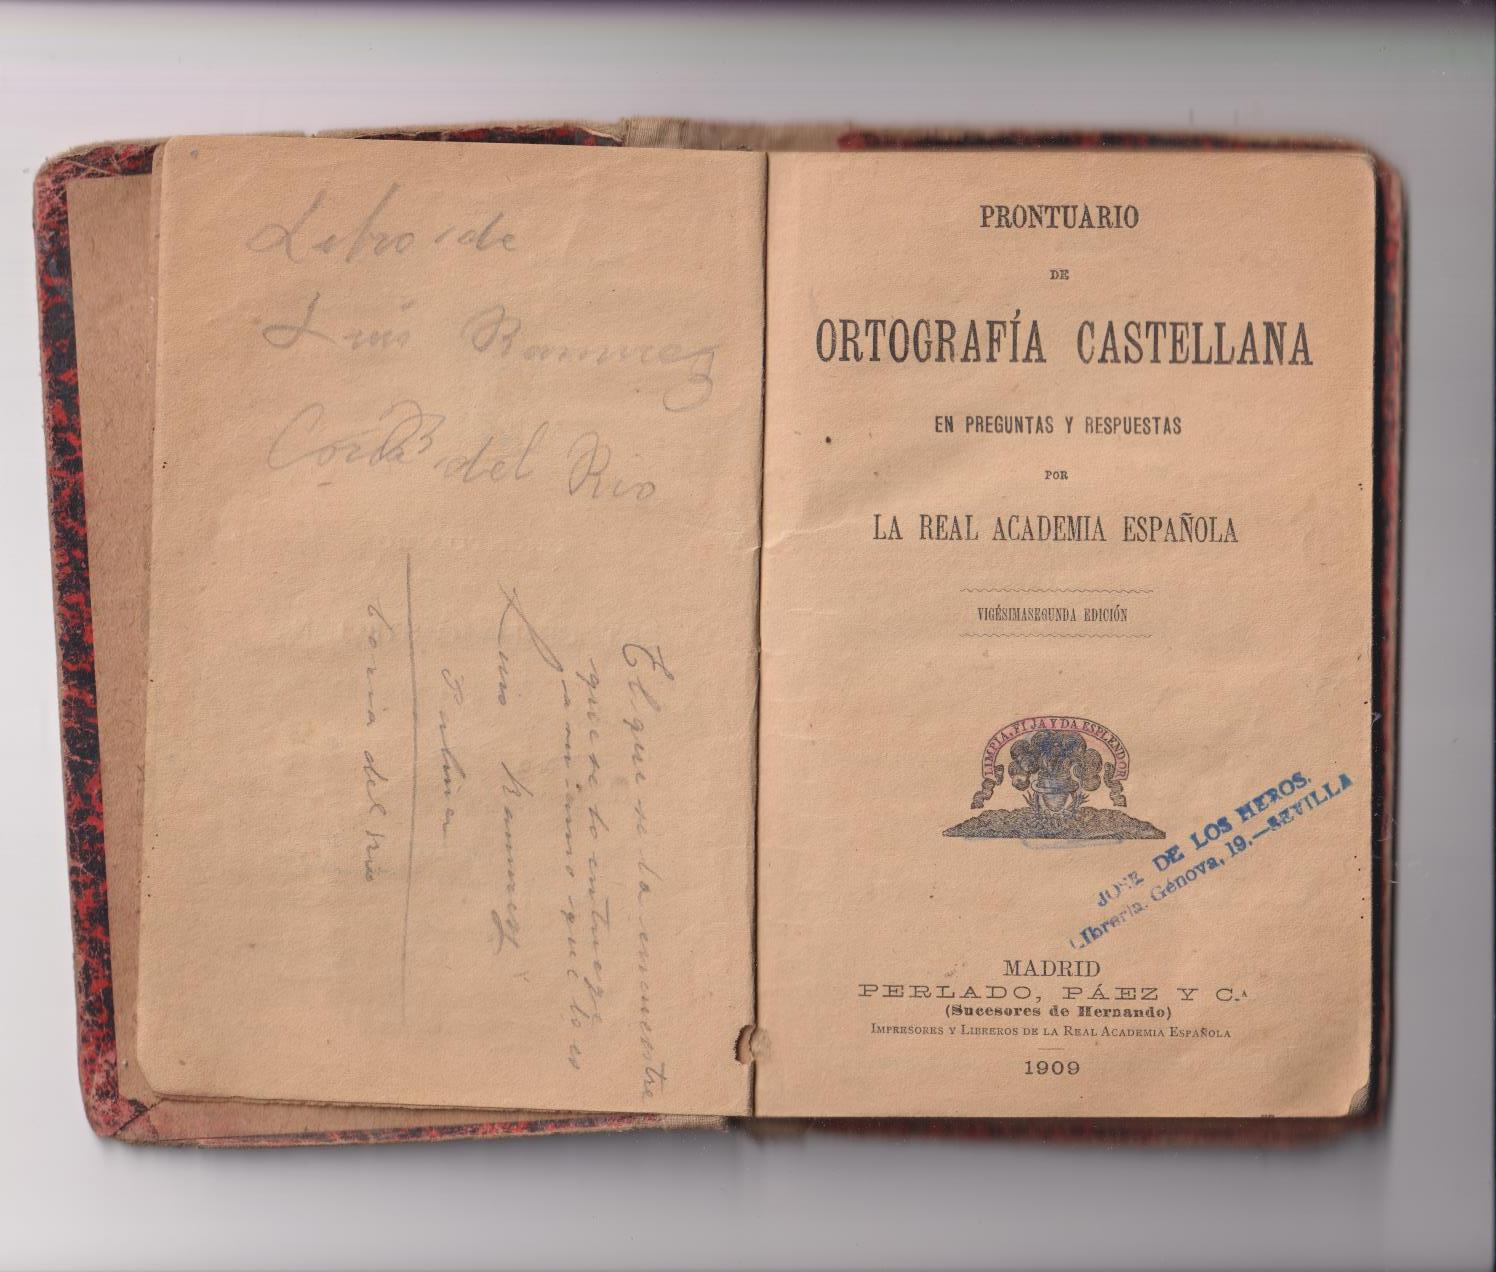 Prontuario de Ortografía Castellano por La Real Academia Española. Madrid, 1909